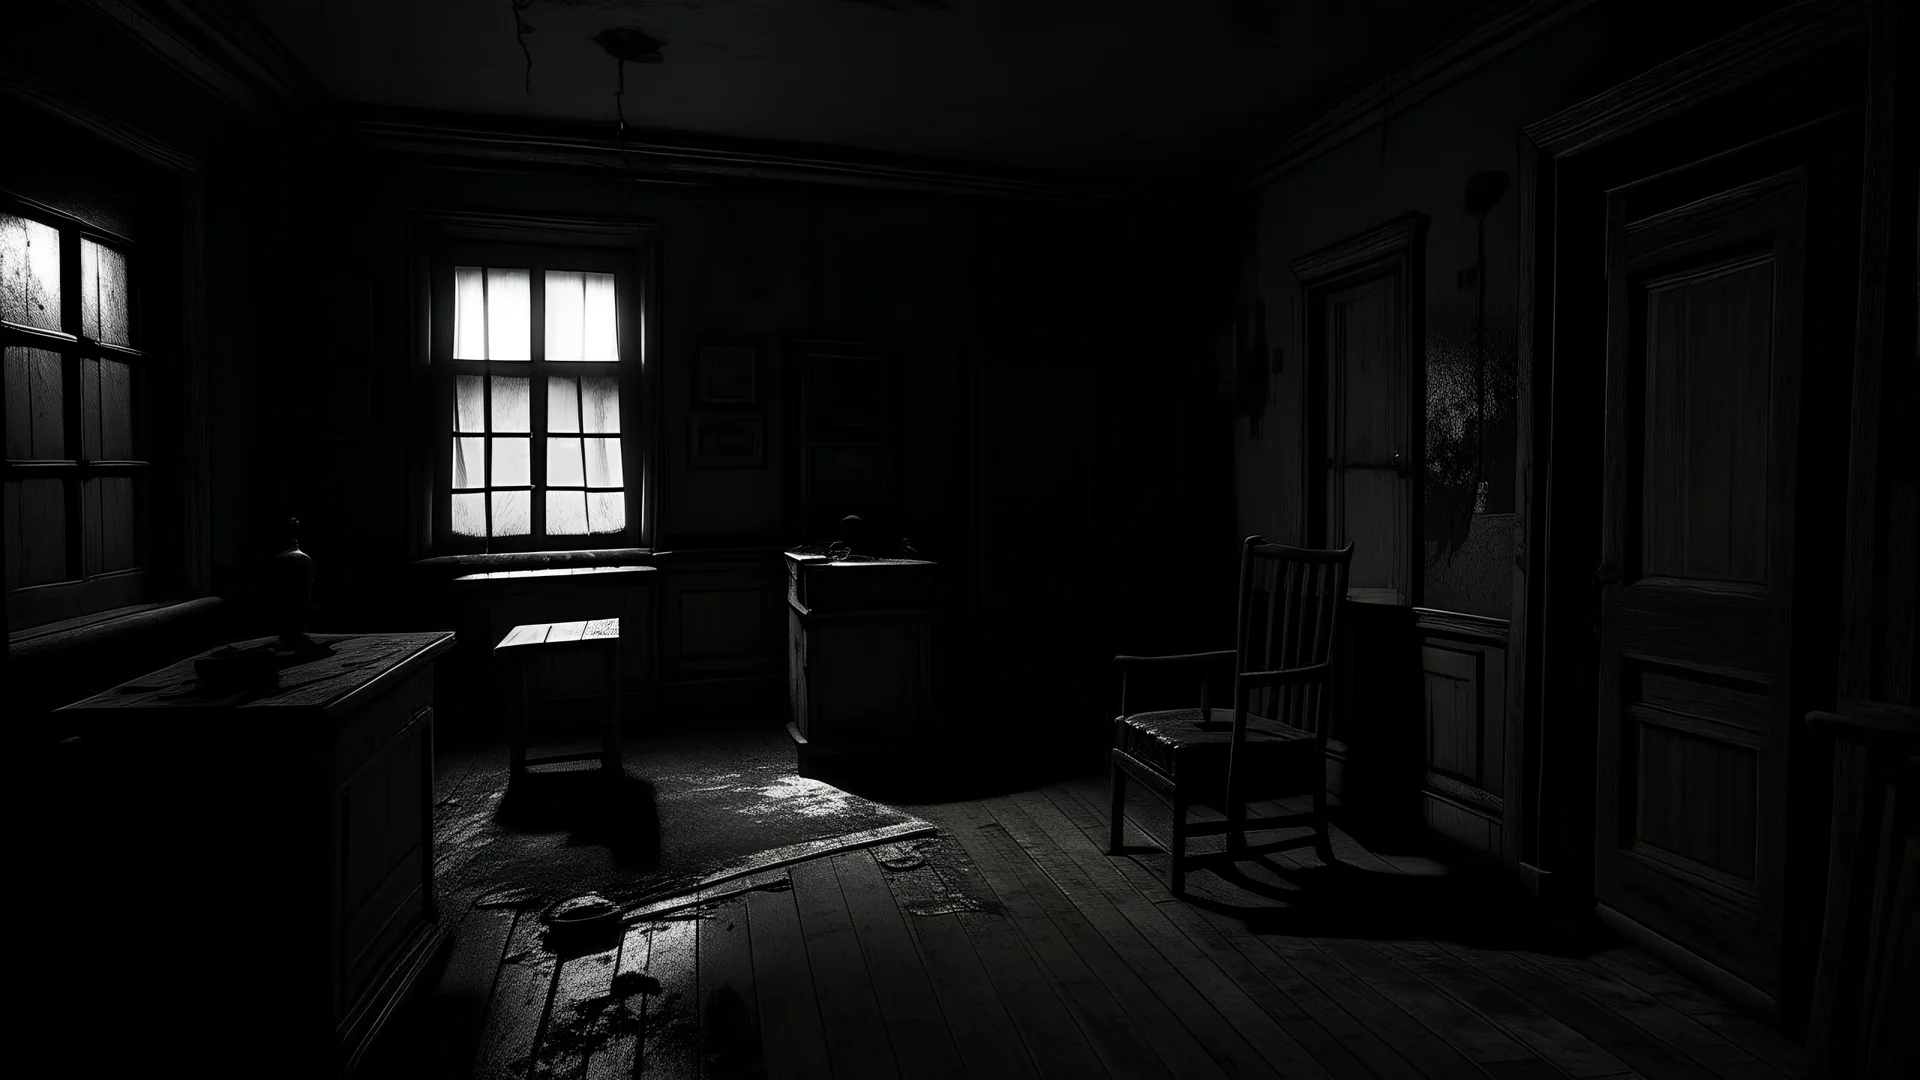 غرفة مظلمة منذ عقود مظلمة ويكون شكل الغرفة مرعب